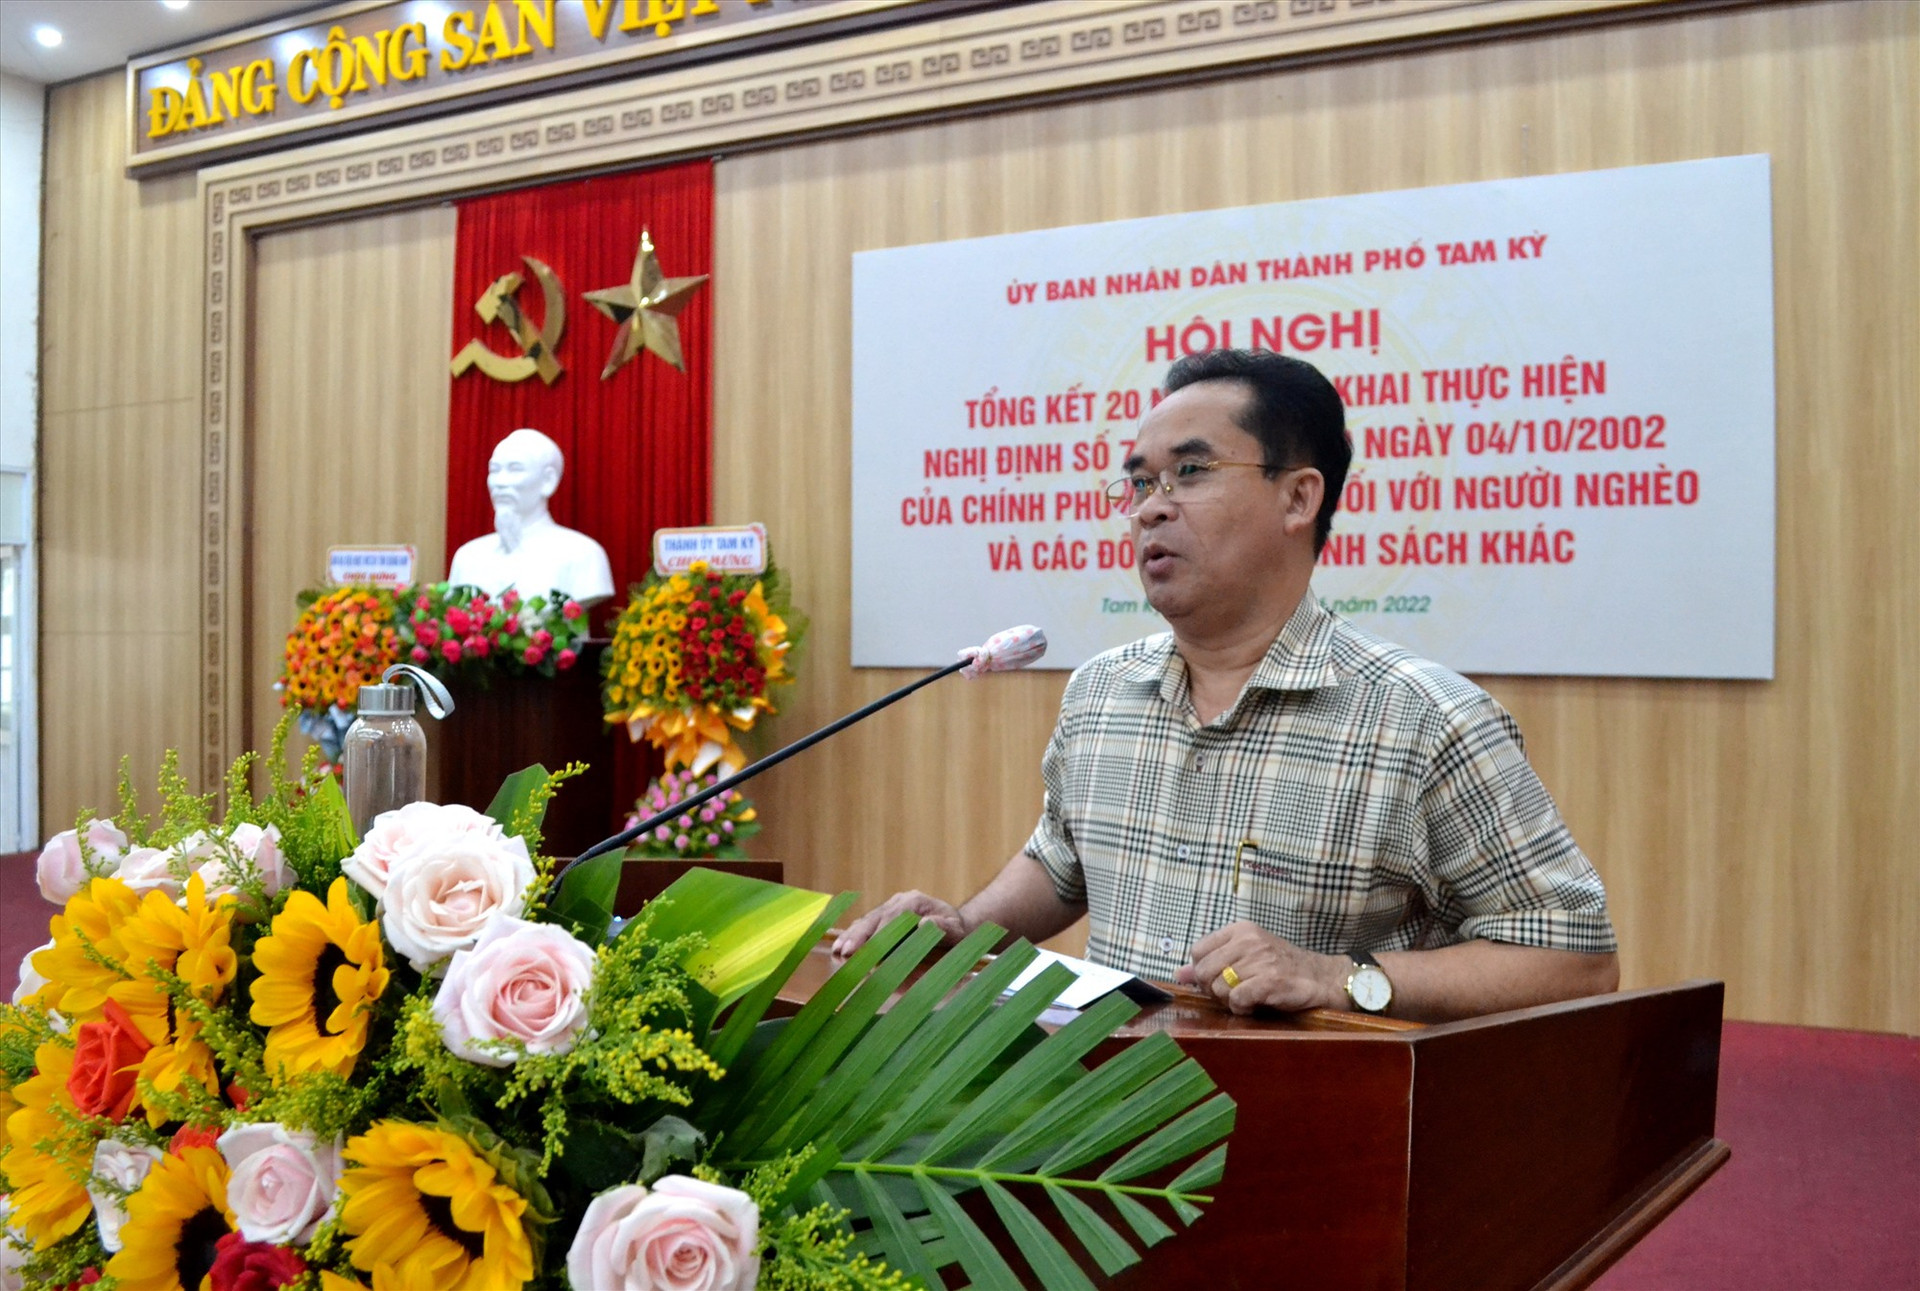 Phó Chủ tịch UBND tỉnh Trần Anh Tuấn phát biểu chỉ đạo hội nghị. Ảnh: Q.VIỆT